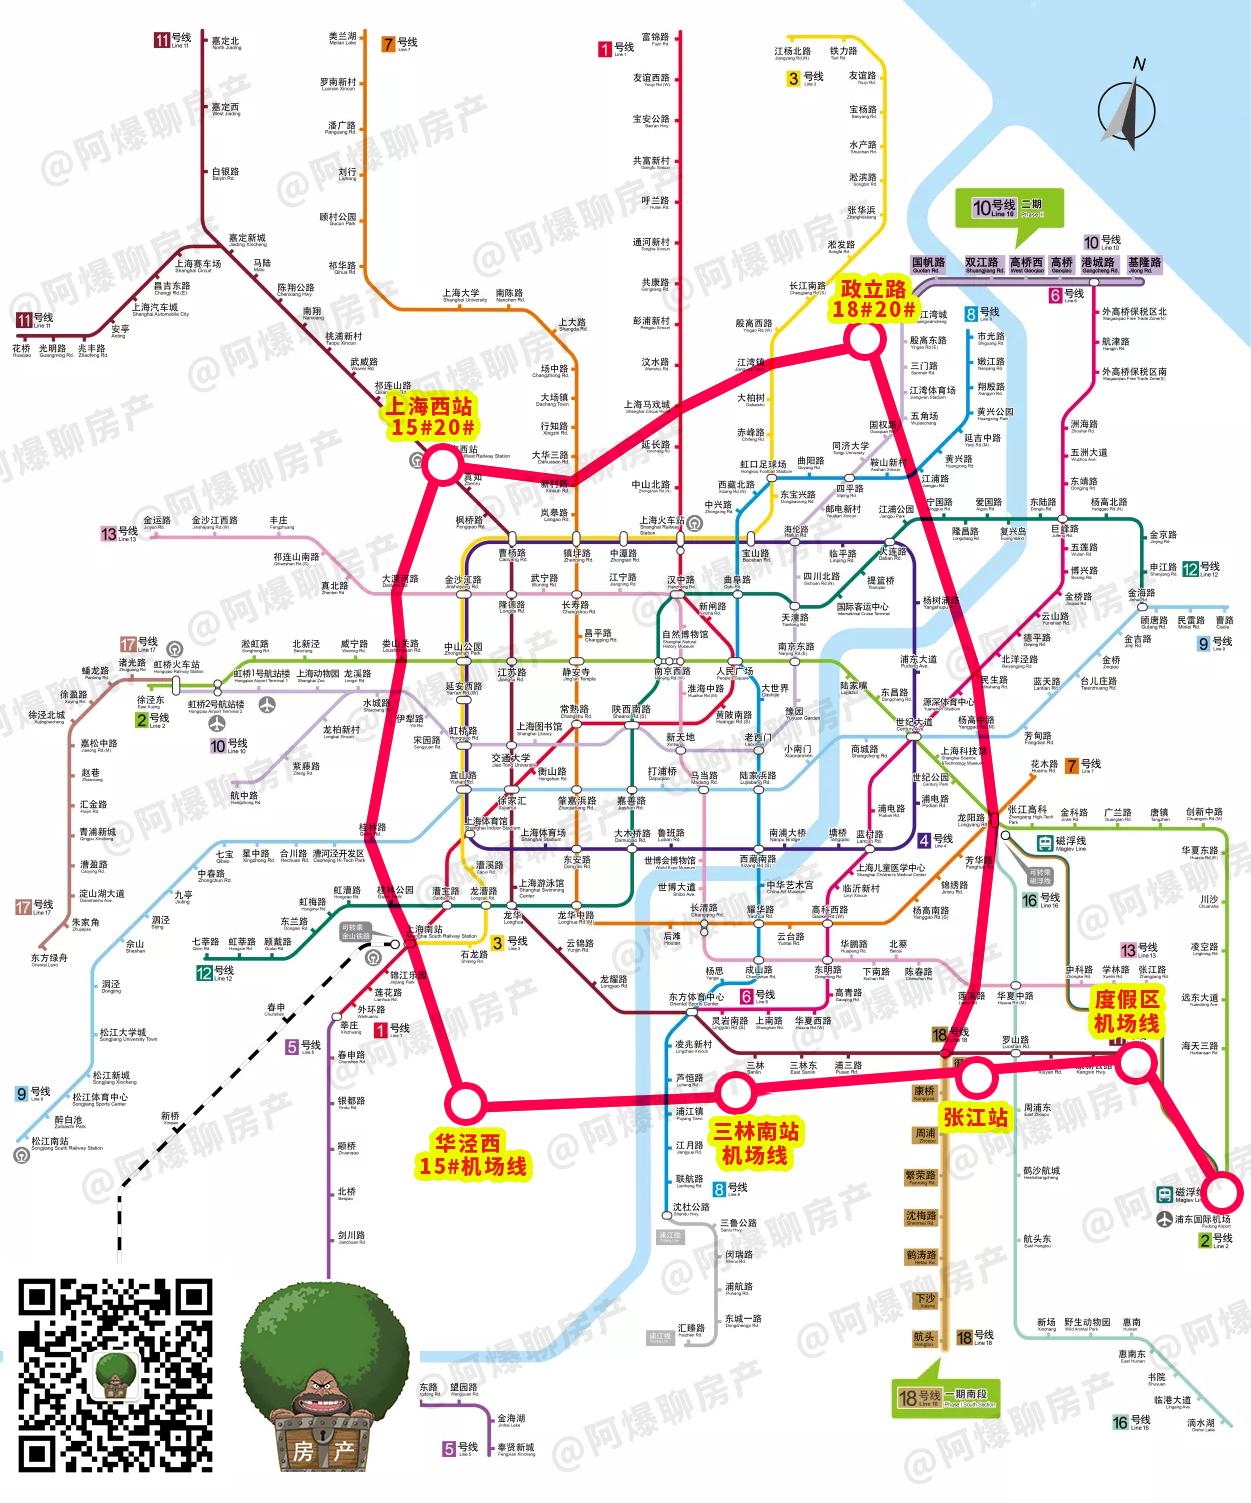 19号线的工可已经让人喜出望外,没想到上海轨道交通20号线也选择在同